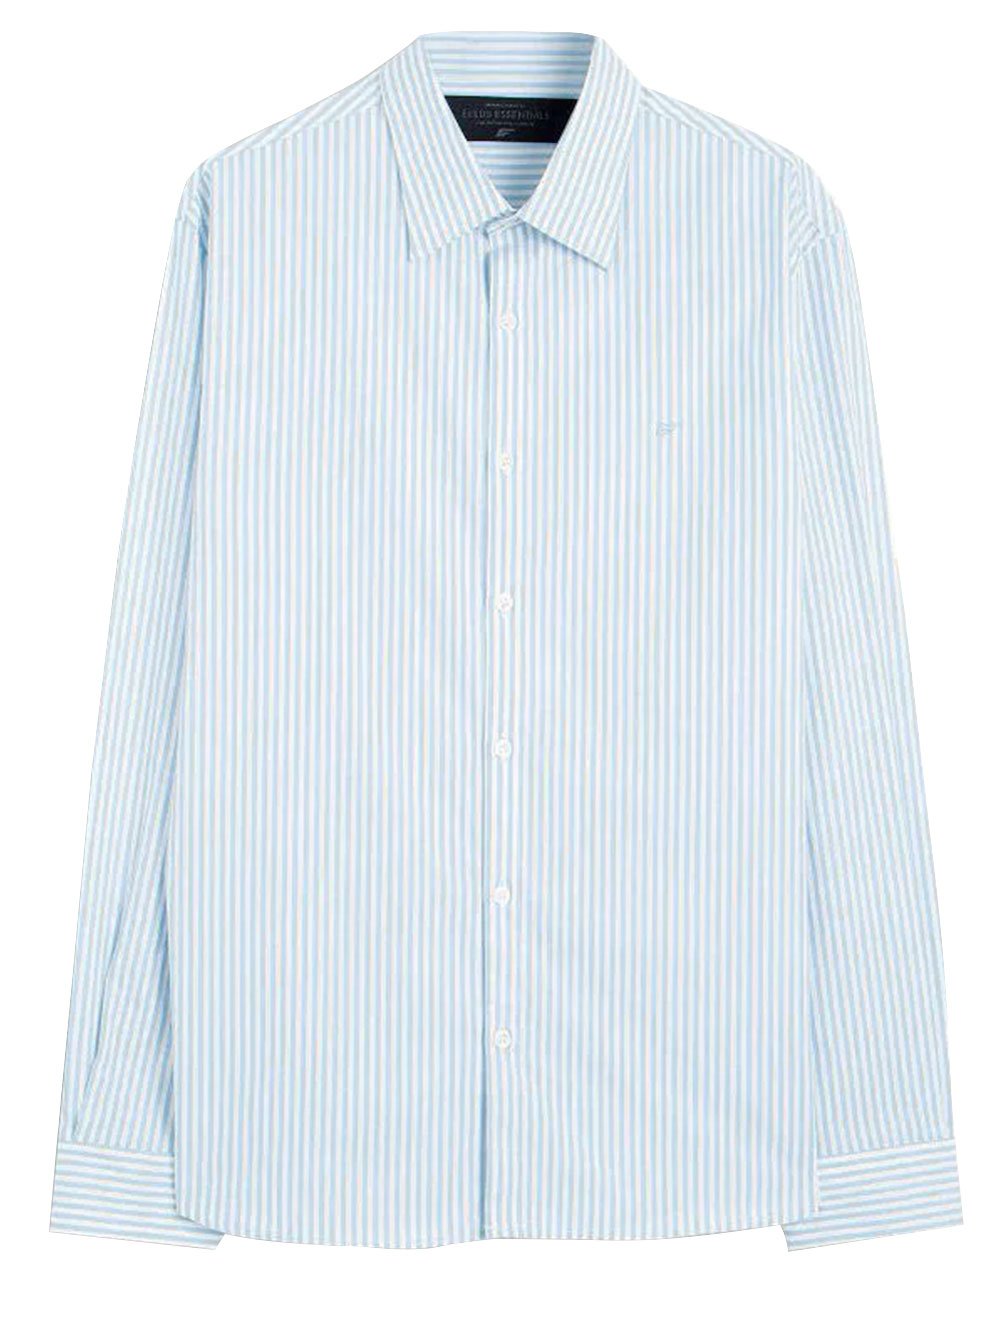 Camisa Ellus Masculina Tricoline LY Slim Midi Stripe Button Down Branco Azul Claro